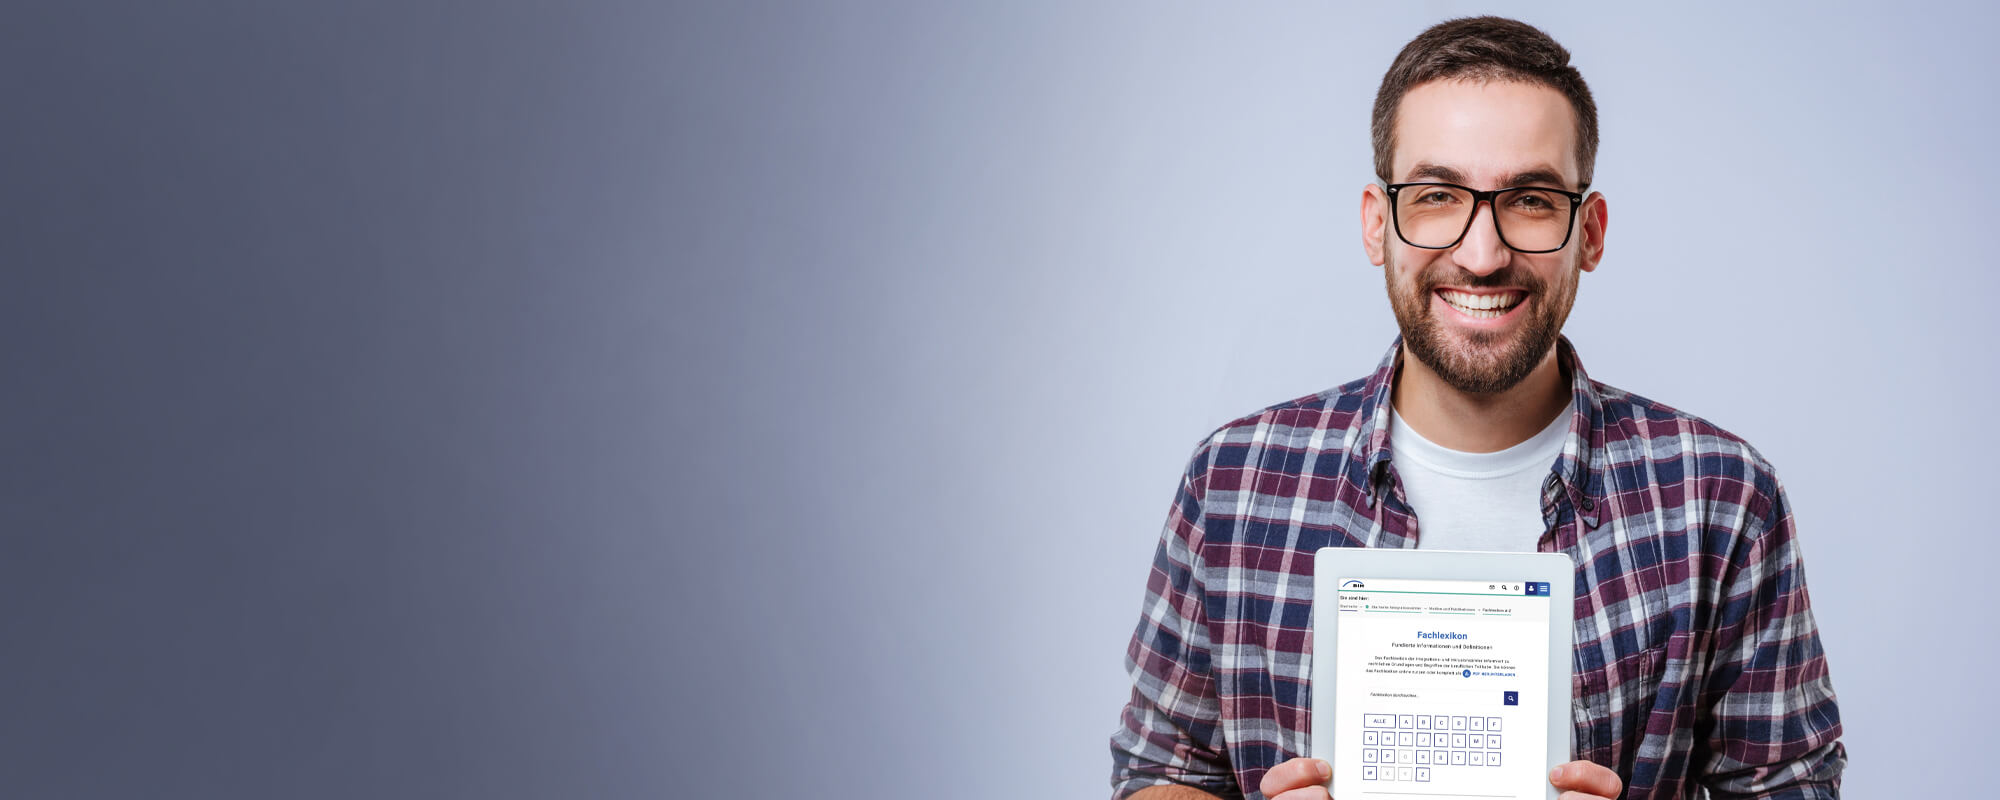 Ein lächelnder Mann hält ein Tablet in den Händen, auf dem die Seite des Fachlexikons zu sehen ist.